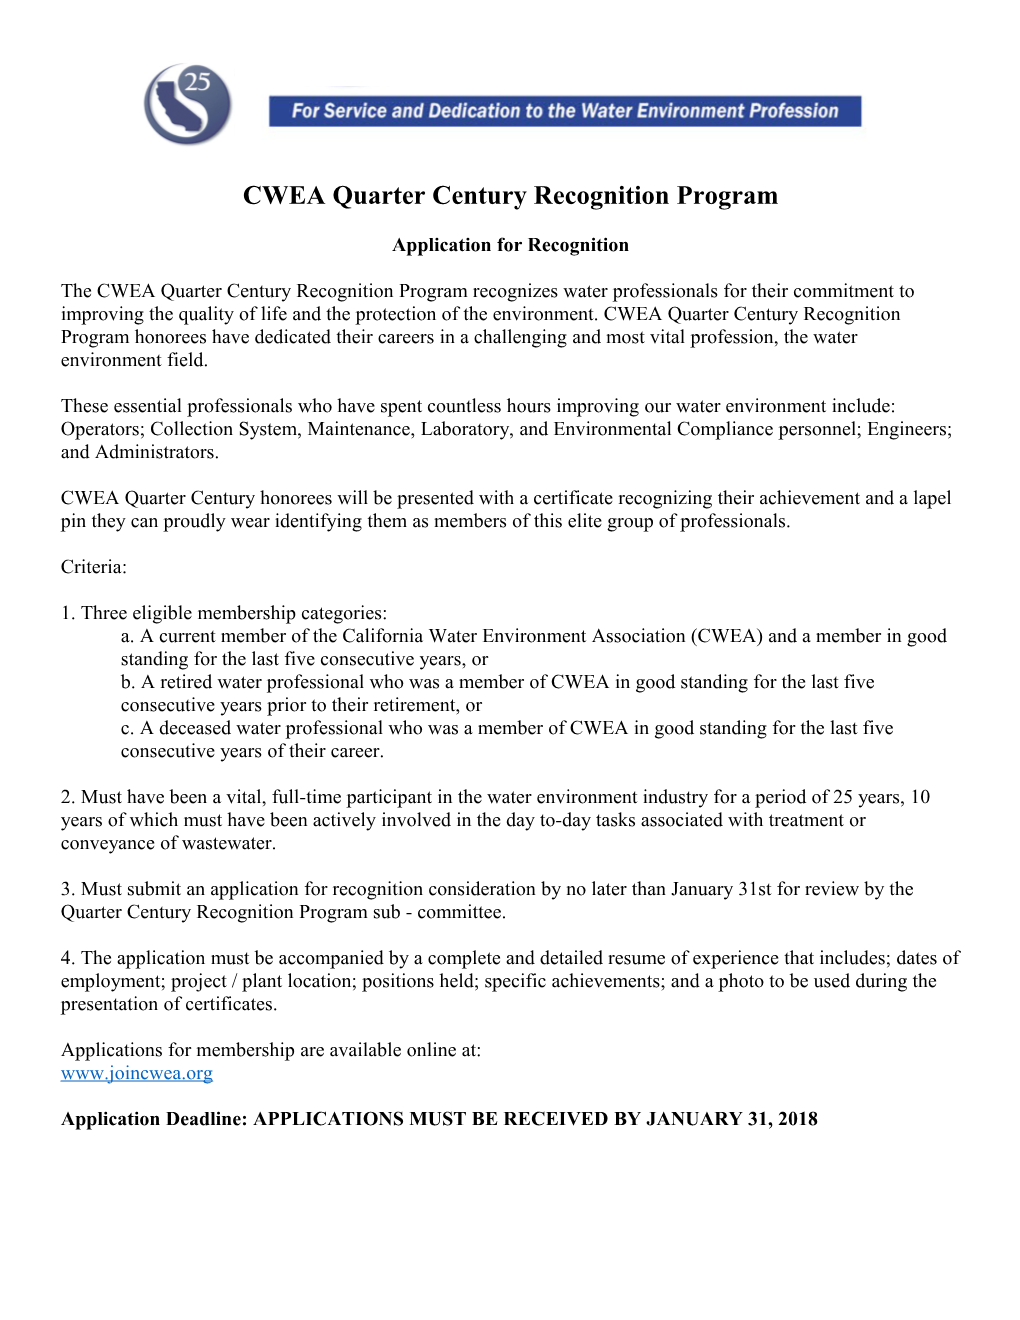 CWEA Quarter Century Recognition Program